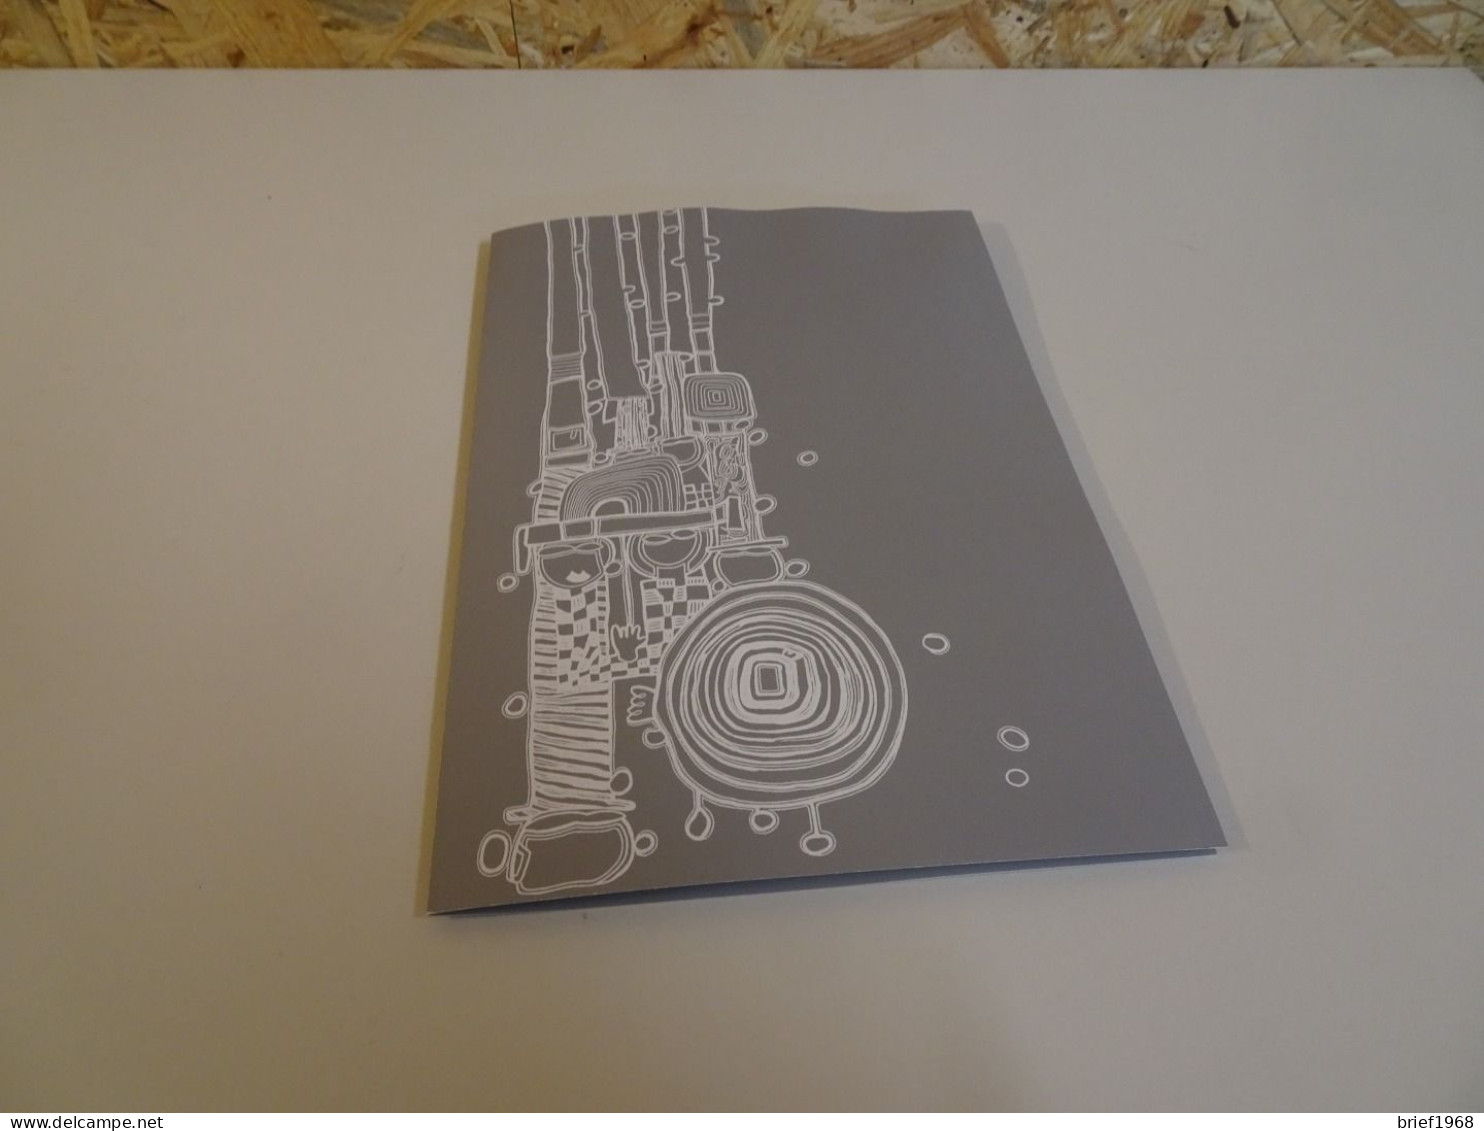 Österreich Block 15 Hundertwasser Folder Mit Schwarzdruck (23821) - Covers & Documents